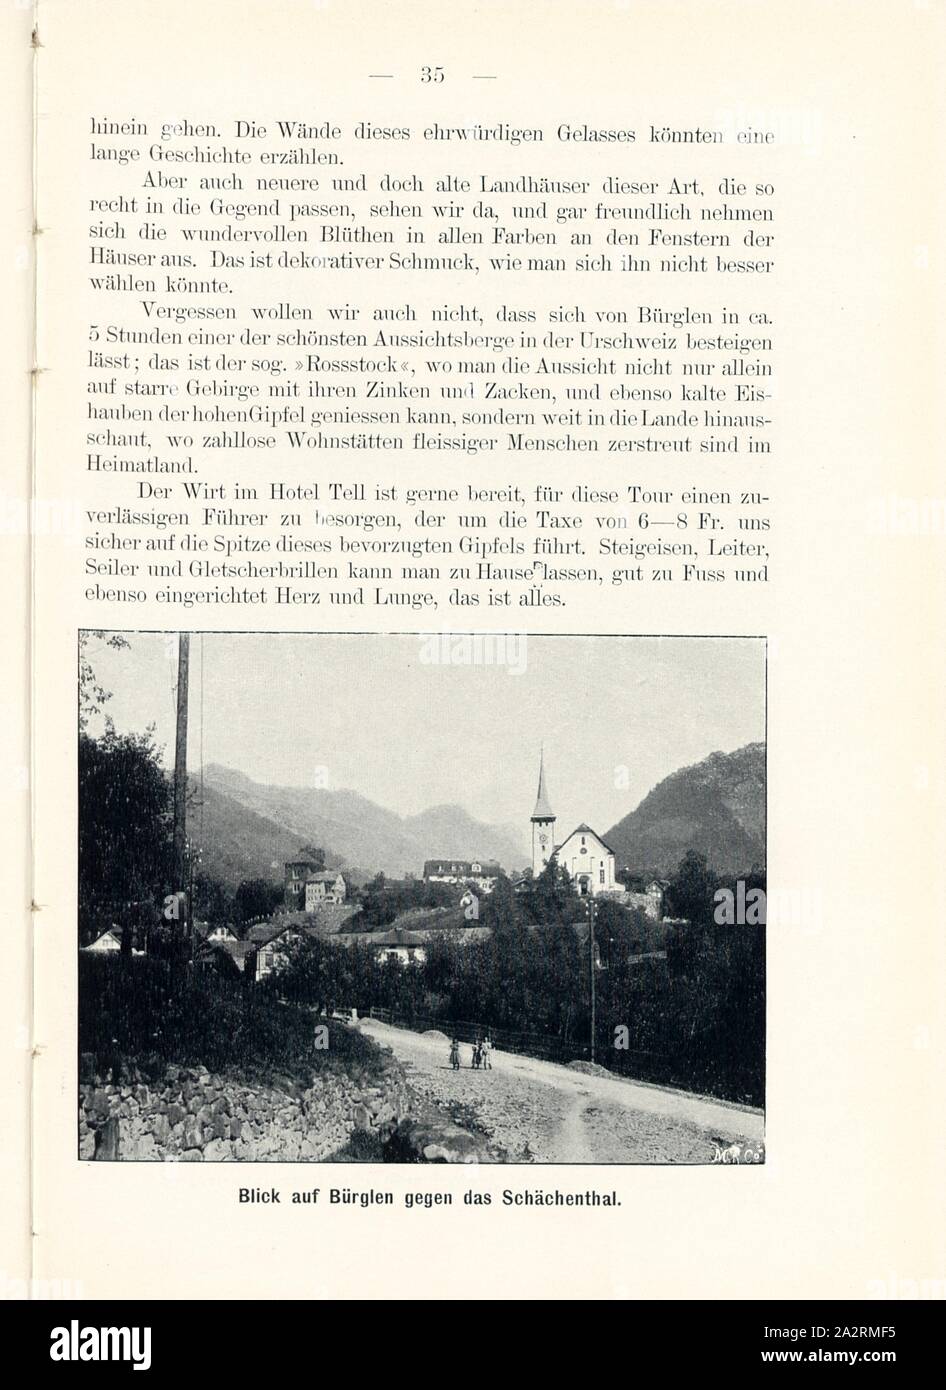 View of Bürglen against the Schächenthal, Bürglen in the canton of Uri, Signed: M.R.C, Fig. 33, p. 35, Meisenbach, Riffarth und Co. (imp.), 1900, J. Knobel: Illustrierter Reisebegleiter für die Alpenstrasse des Klausen und ihre Zufahrtslinien. Glarus: Buchdruckerei J. Spälti, 1900 Stock Photo